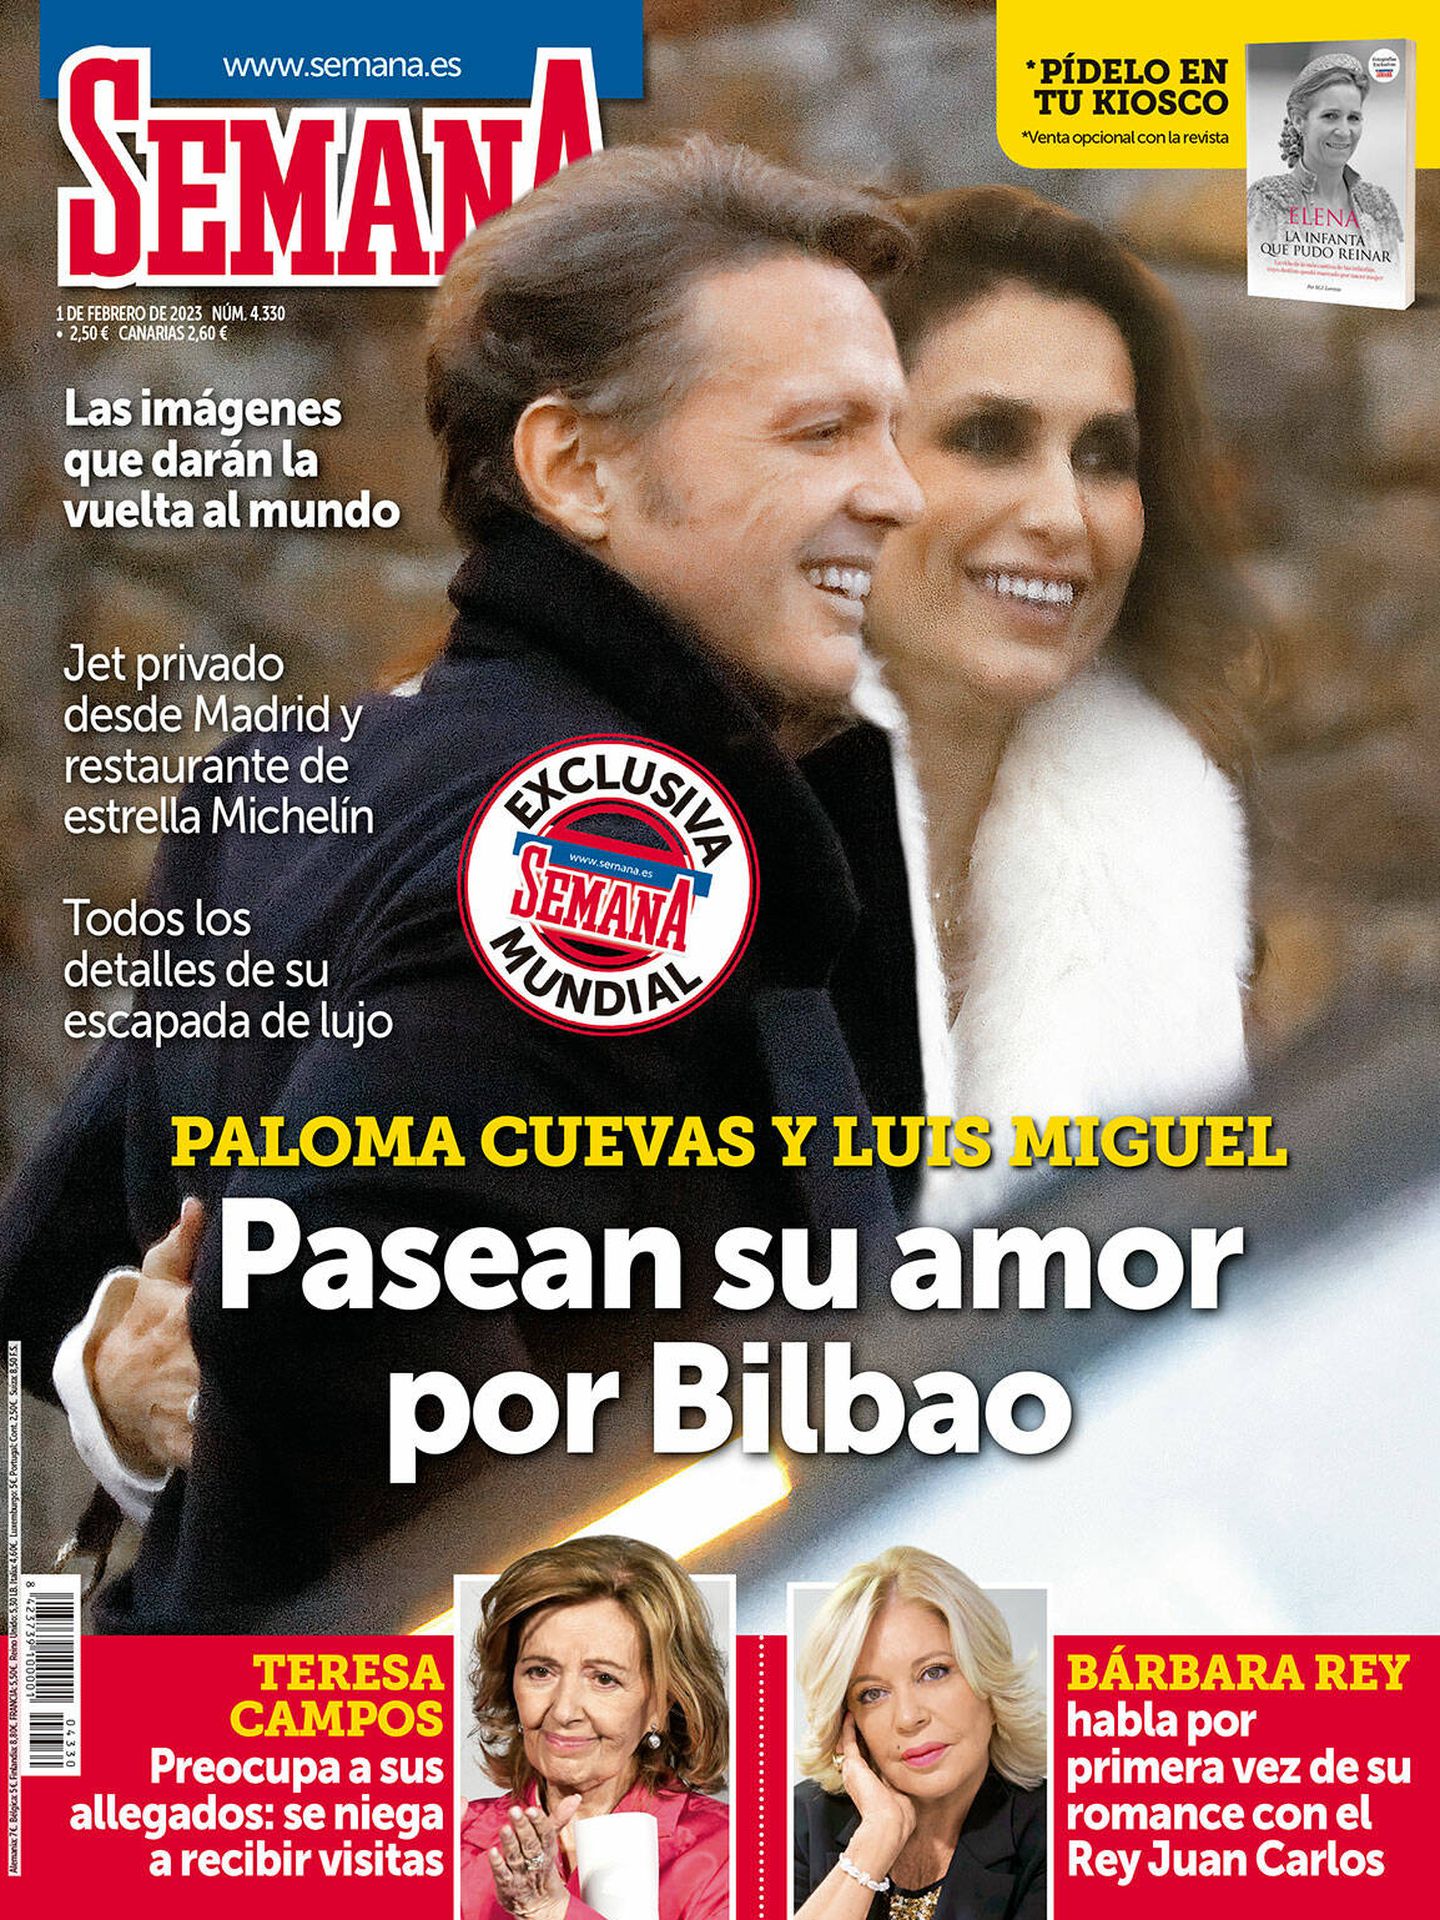 Paloma Cuevas y Luis Miguel pasean su amor en la portada de 'Semana'.